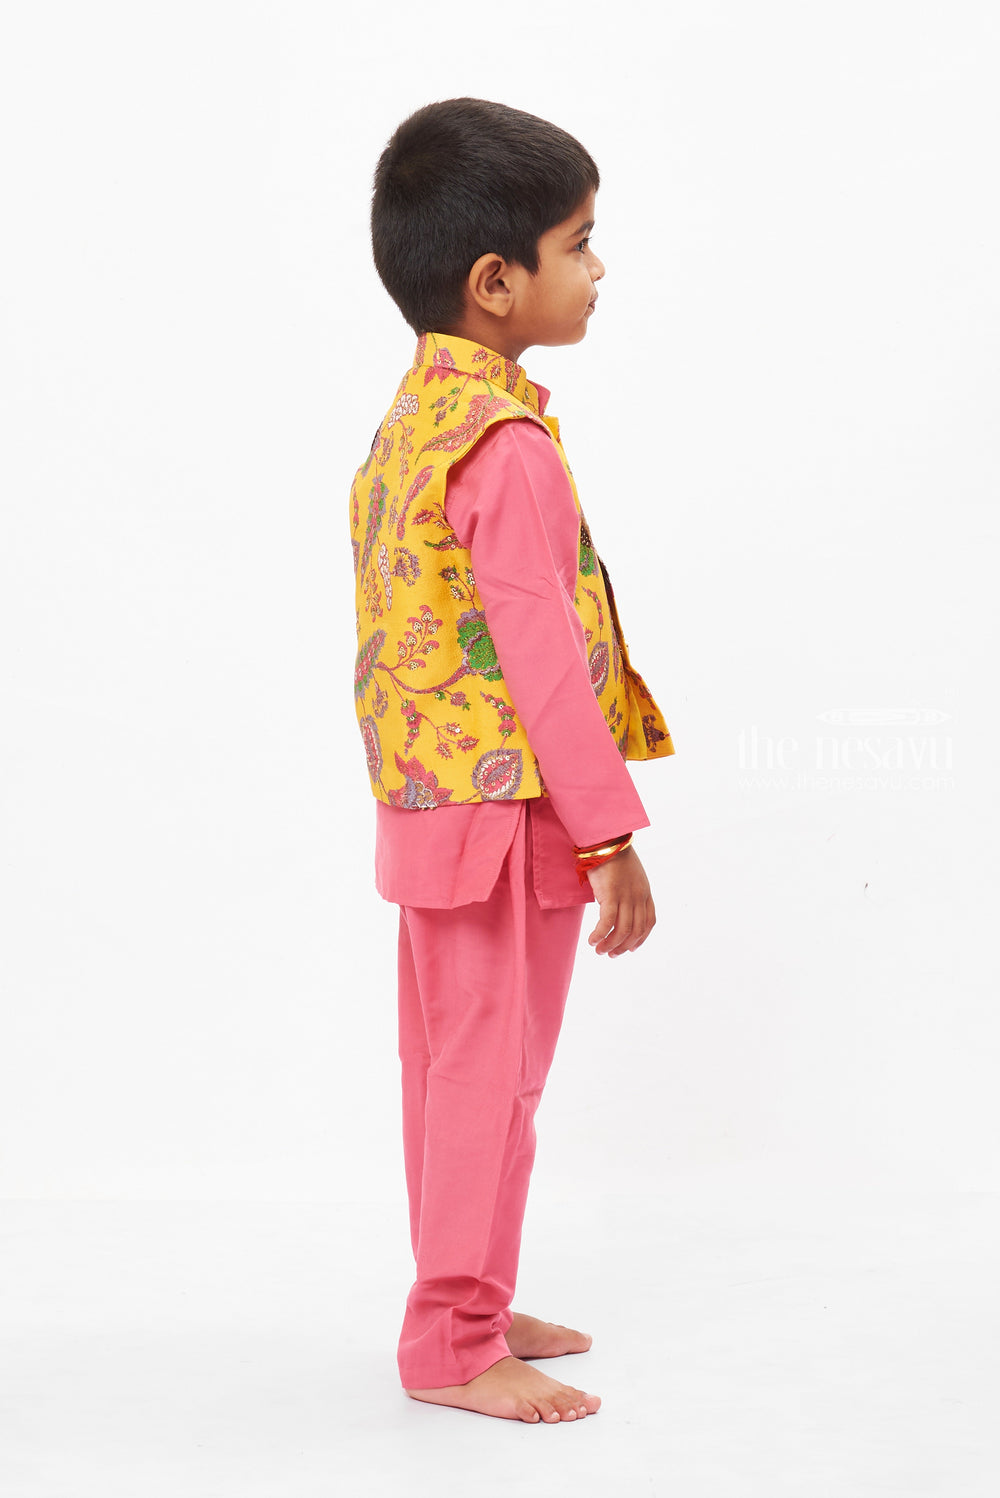 The Nesavu Boys Jacket Sets Ceremonial Marigold Majesty: Boys Festive Kurta & Pant Set Nesavu Shop Boys Purple Kurta Pant Jacket Set for Ugadi, Tamil New Year | The Nesavu